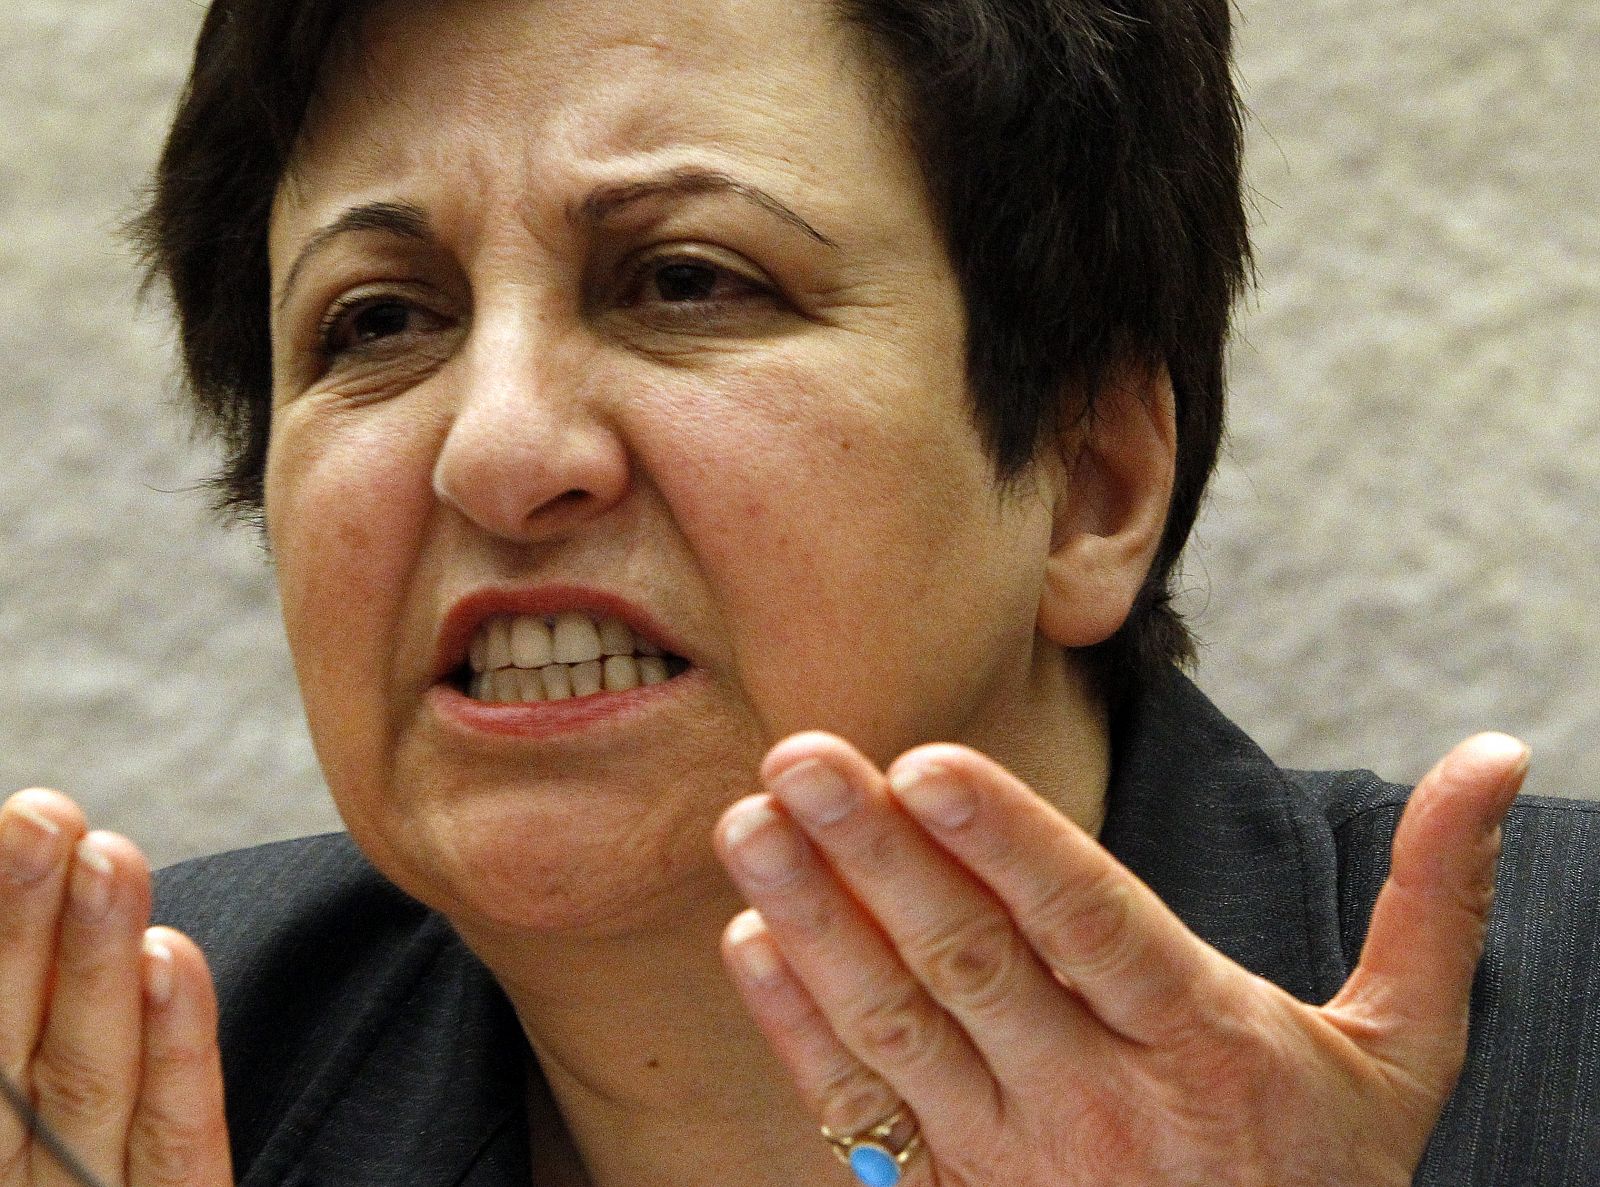 La Premio Nobel de la Paz iraní Shiran Ebadi gesticual durante una rueda de prensa en la sede europea de Naciones Unidas en Ginebra.